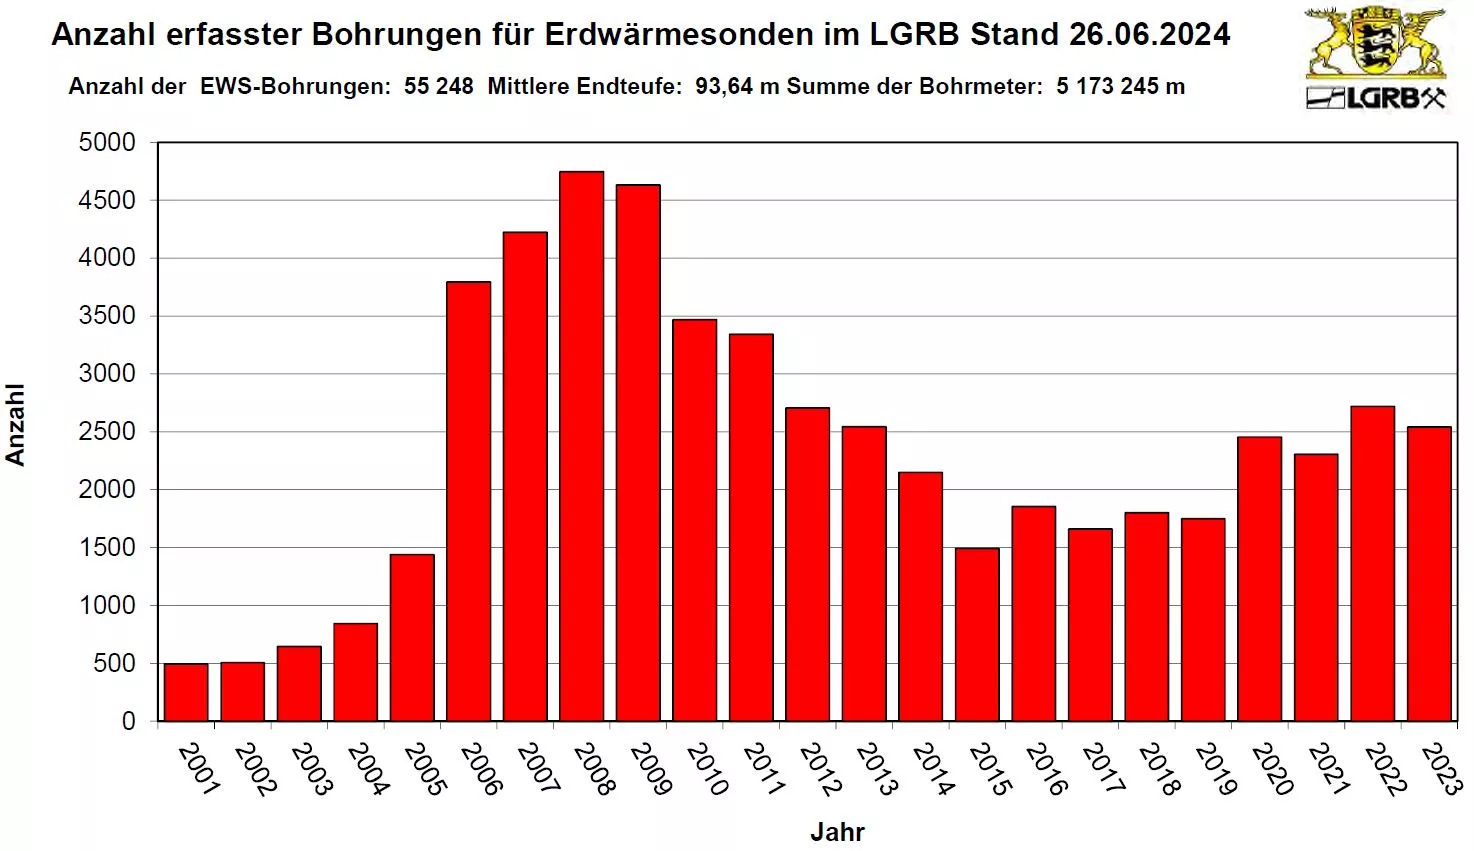 Balkendiagramm zeigt für die Jahre 2007 bis 2022 die Anzahl der jährlich in Baden-Württemberg erstellten Erdwärmesonden